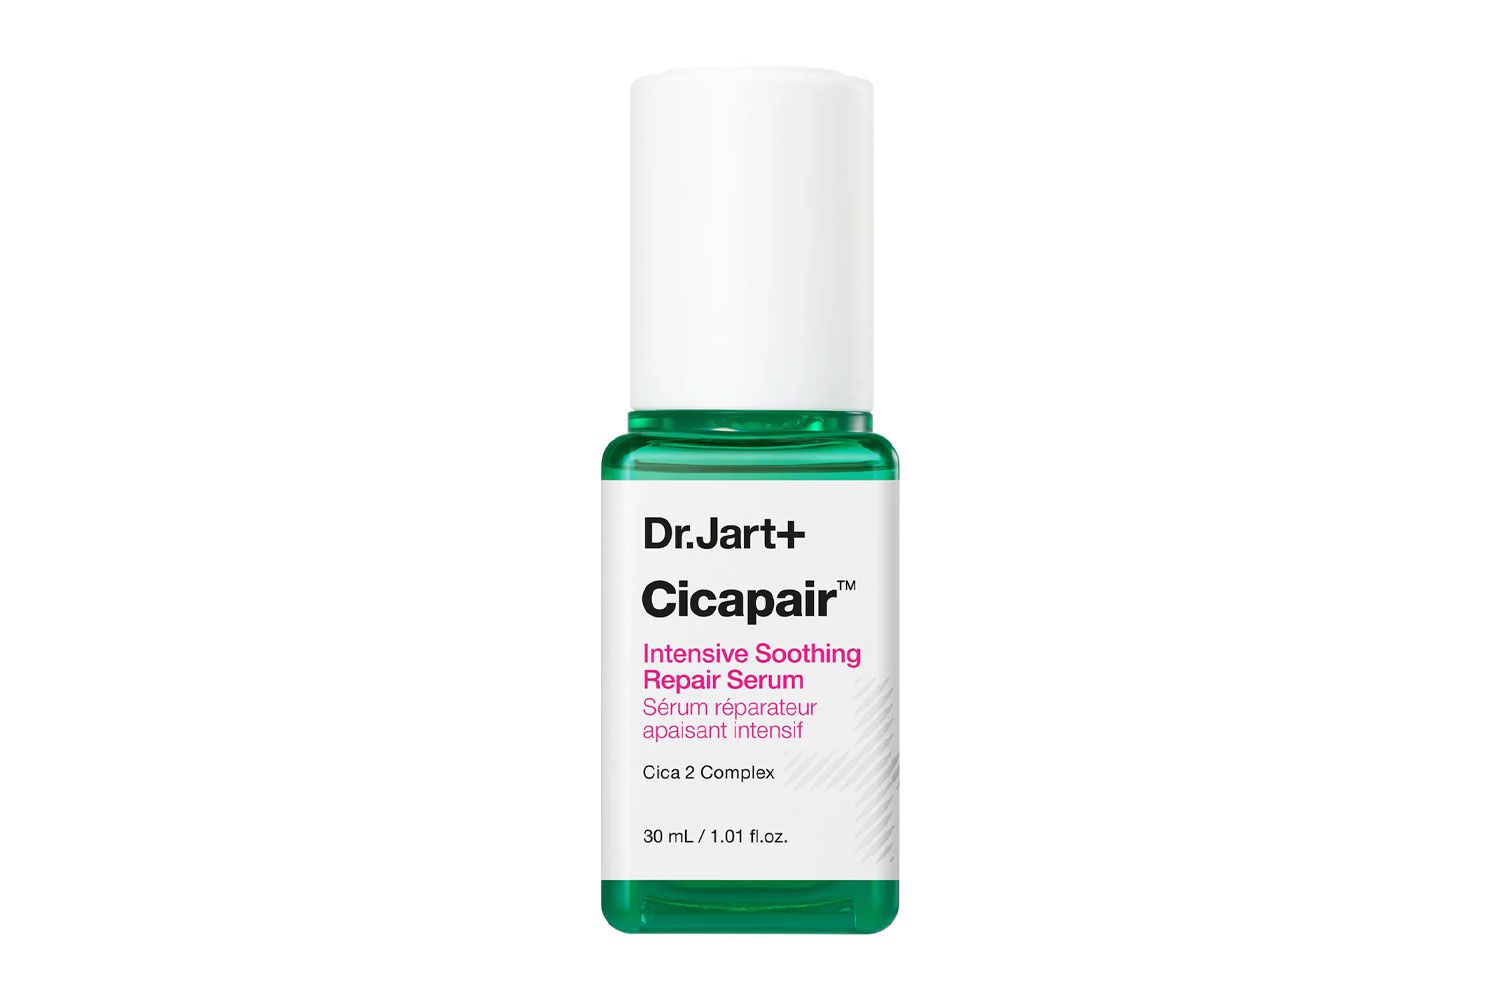 Dr. Jart+ Cicapair Sensitive Skin Serum for Redness and Barrier Repair